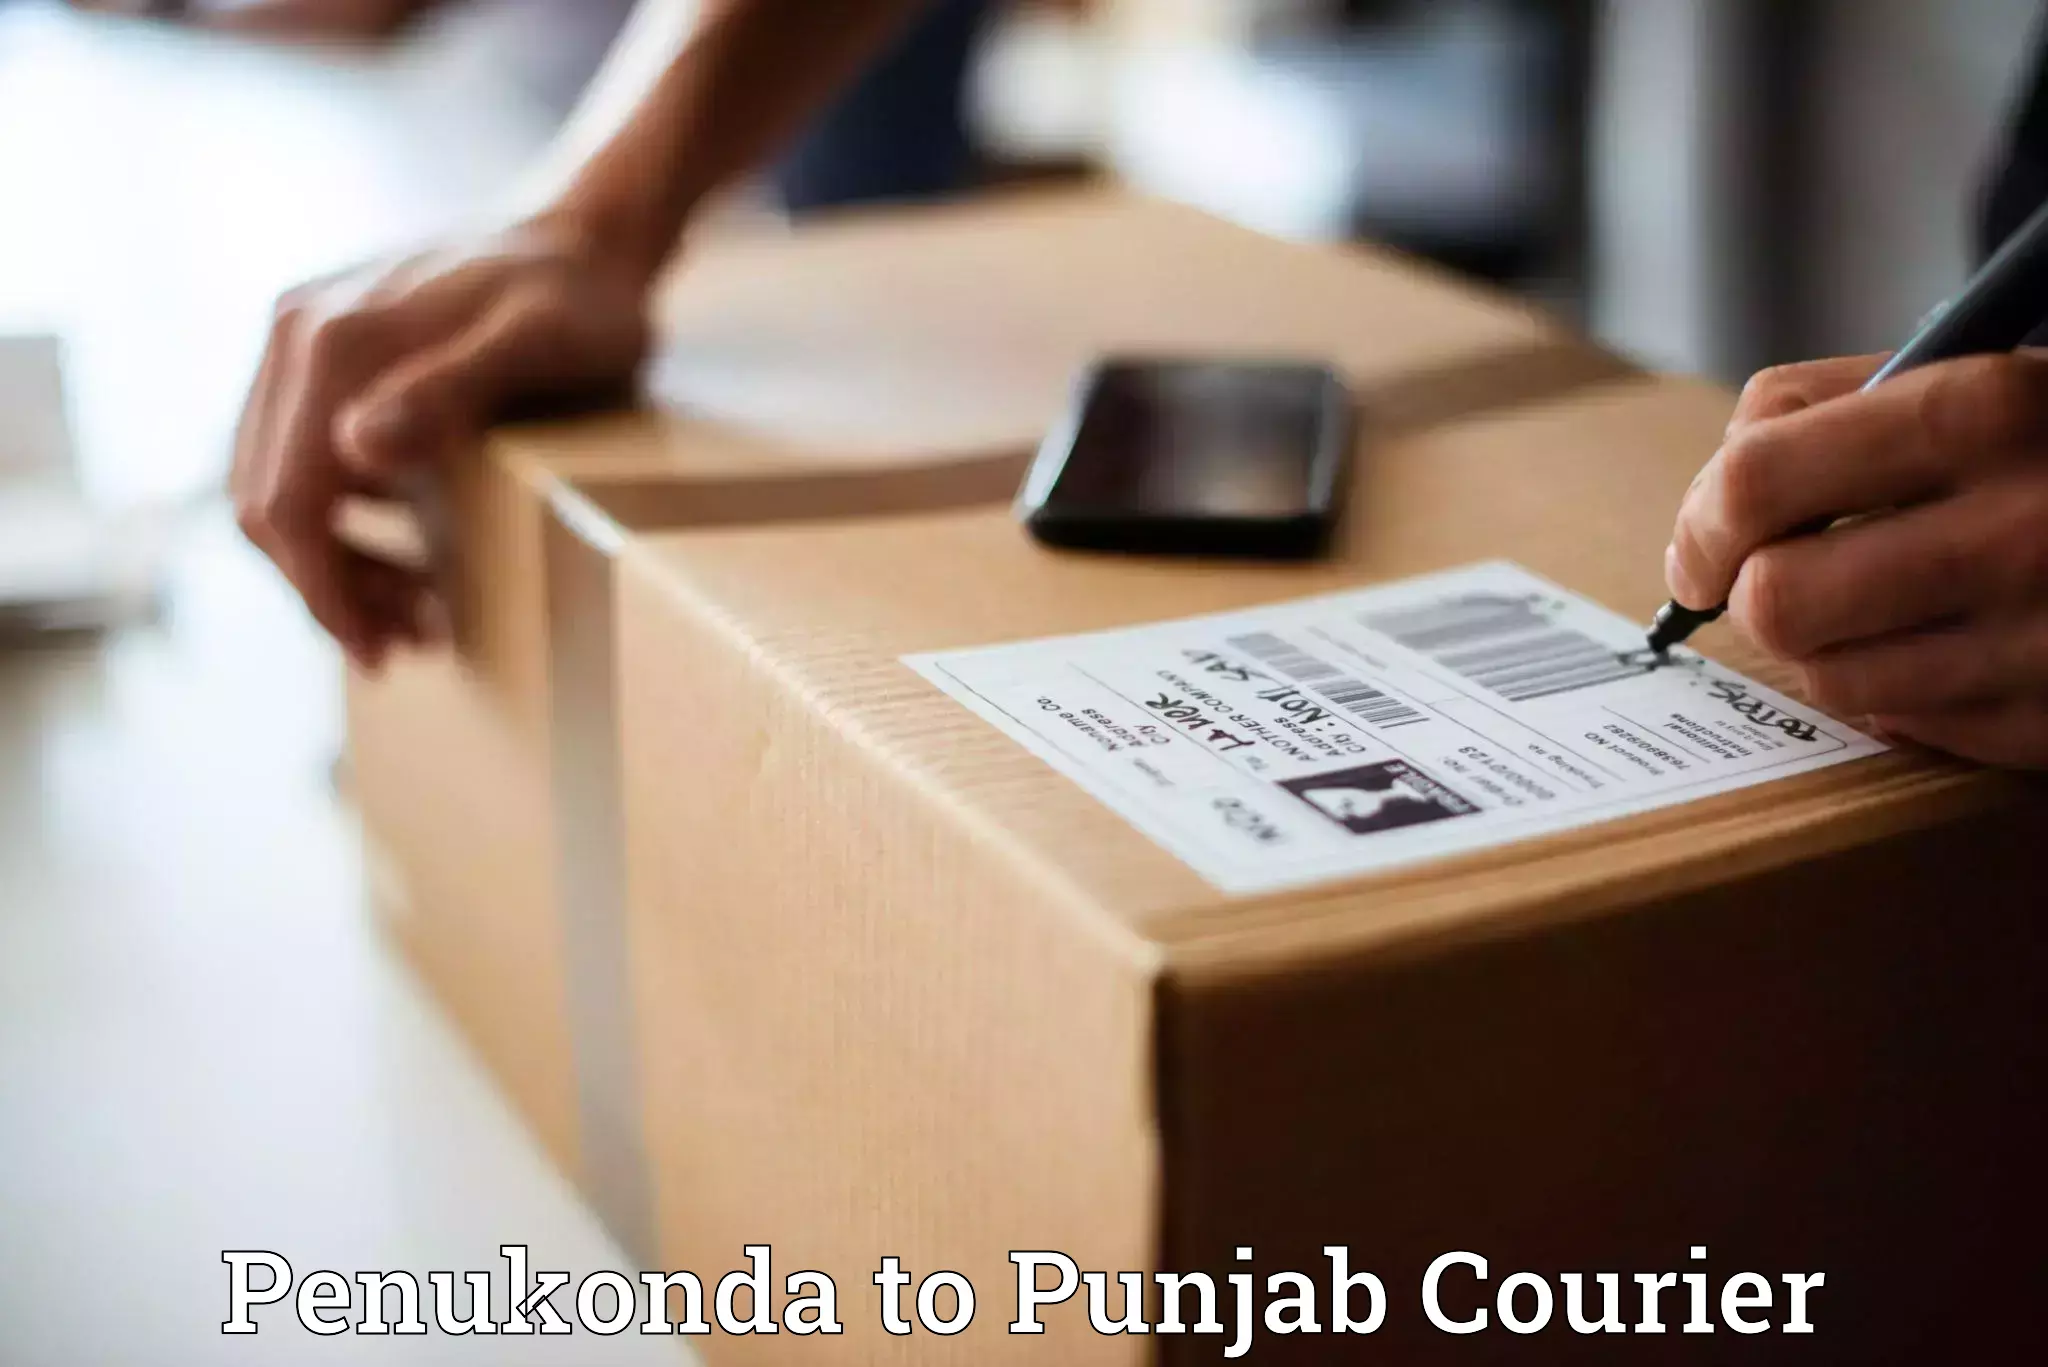 Courier rate comparison Penukonda to Mohali